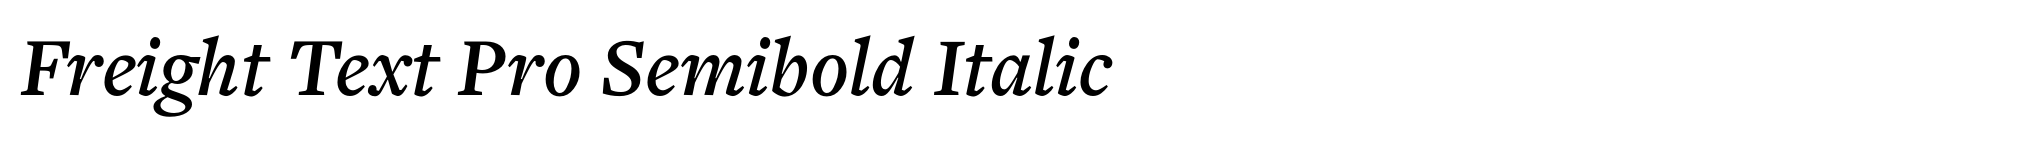 Freight Text Pro Semibold Italic image